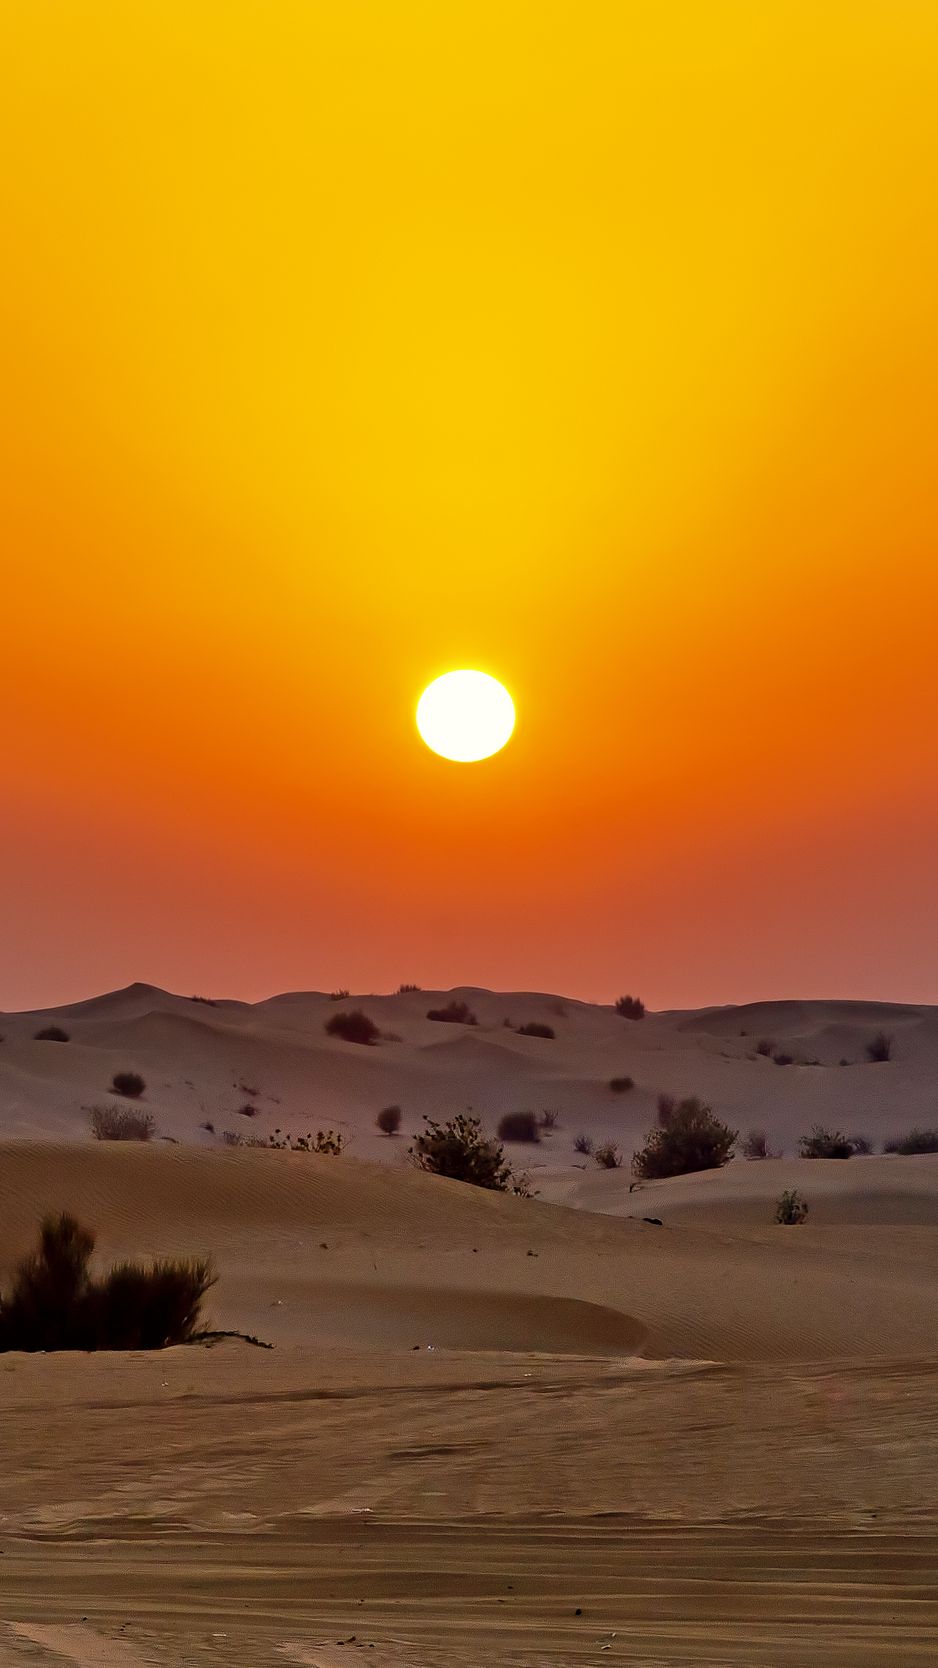 Desert sunset nature sand wallpaper  3840x2160  607687  WallpaperUP